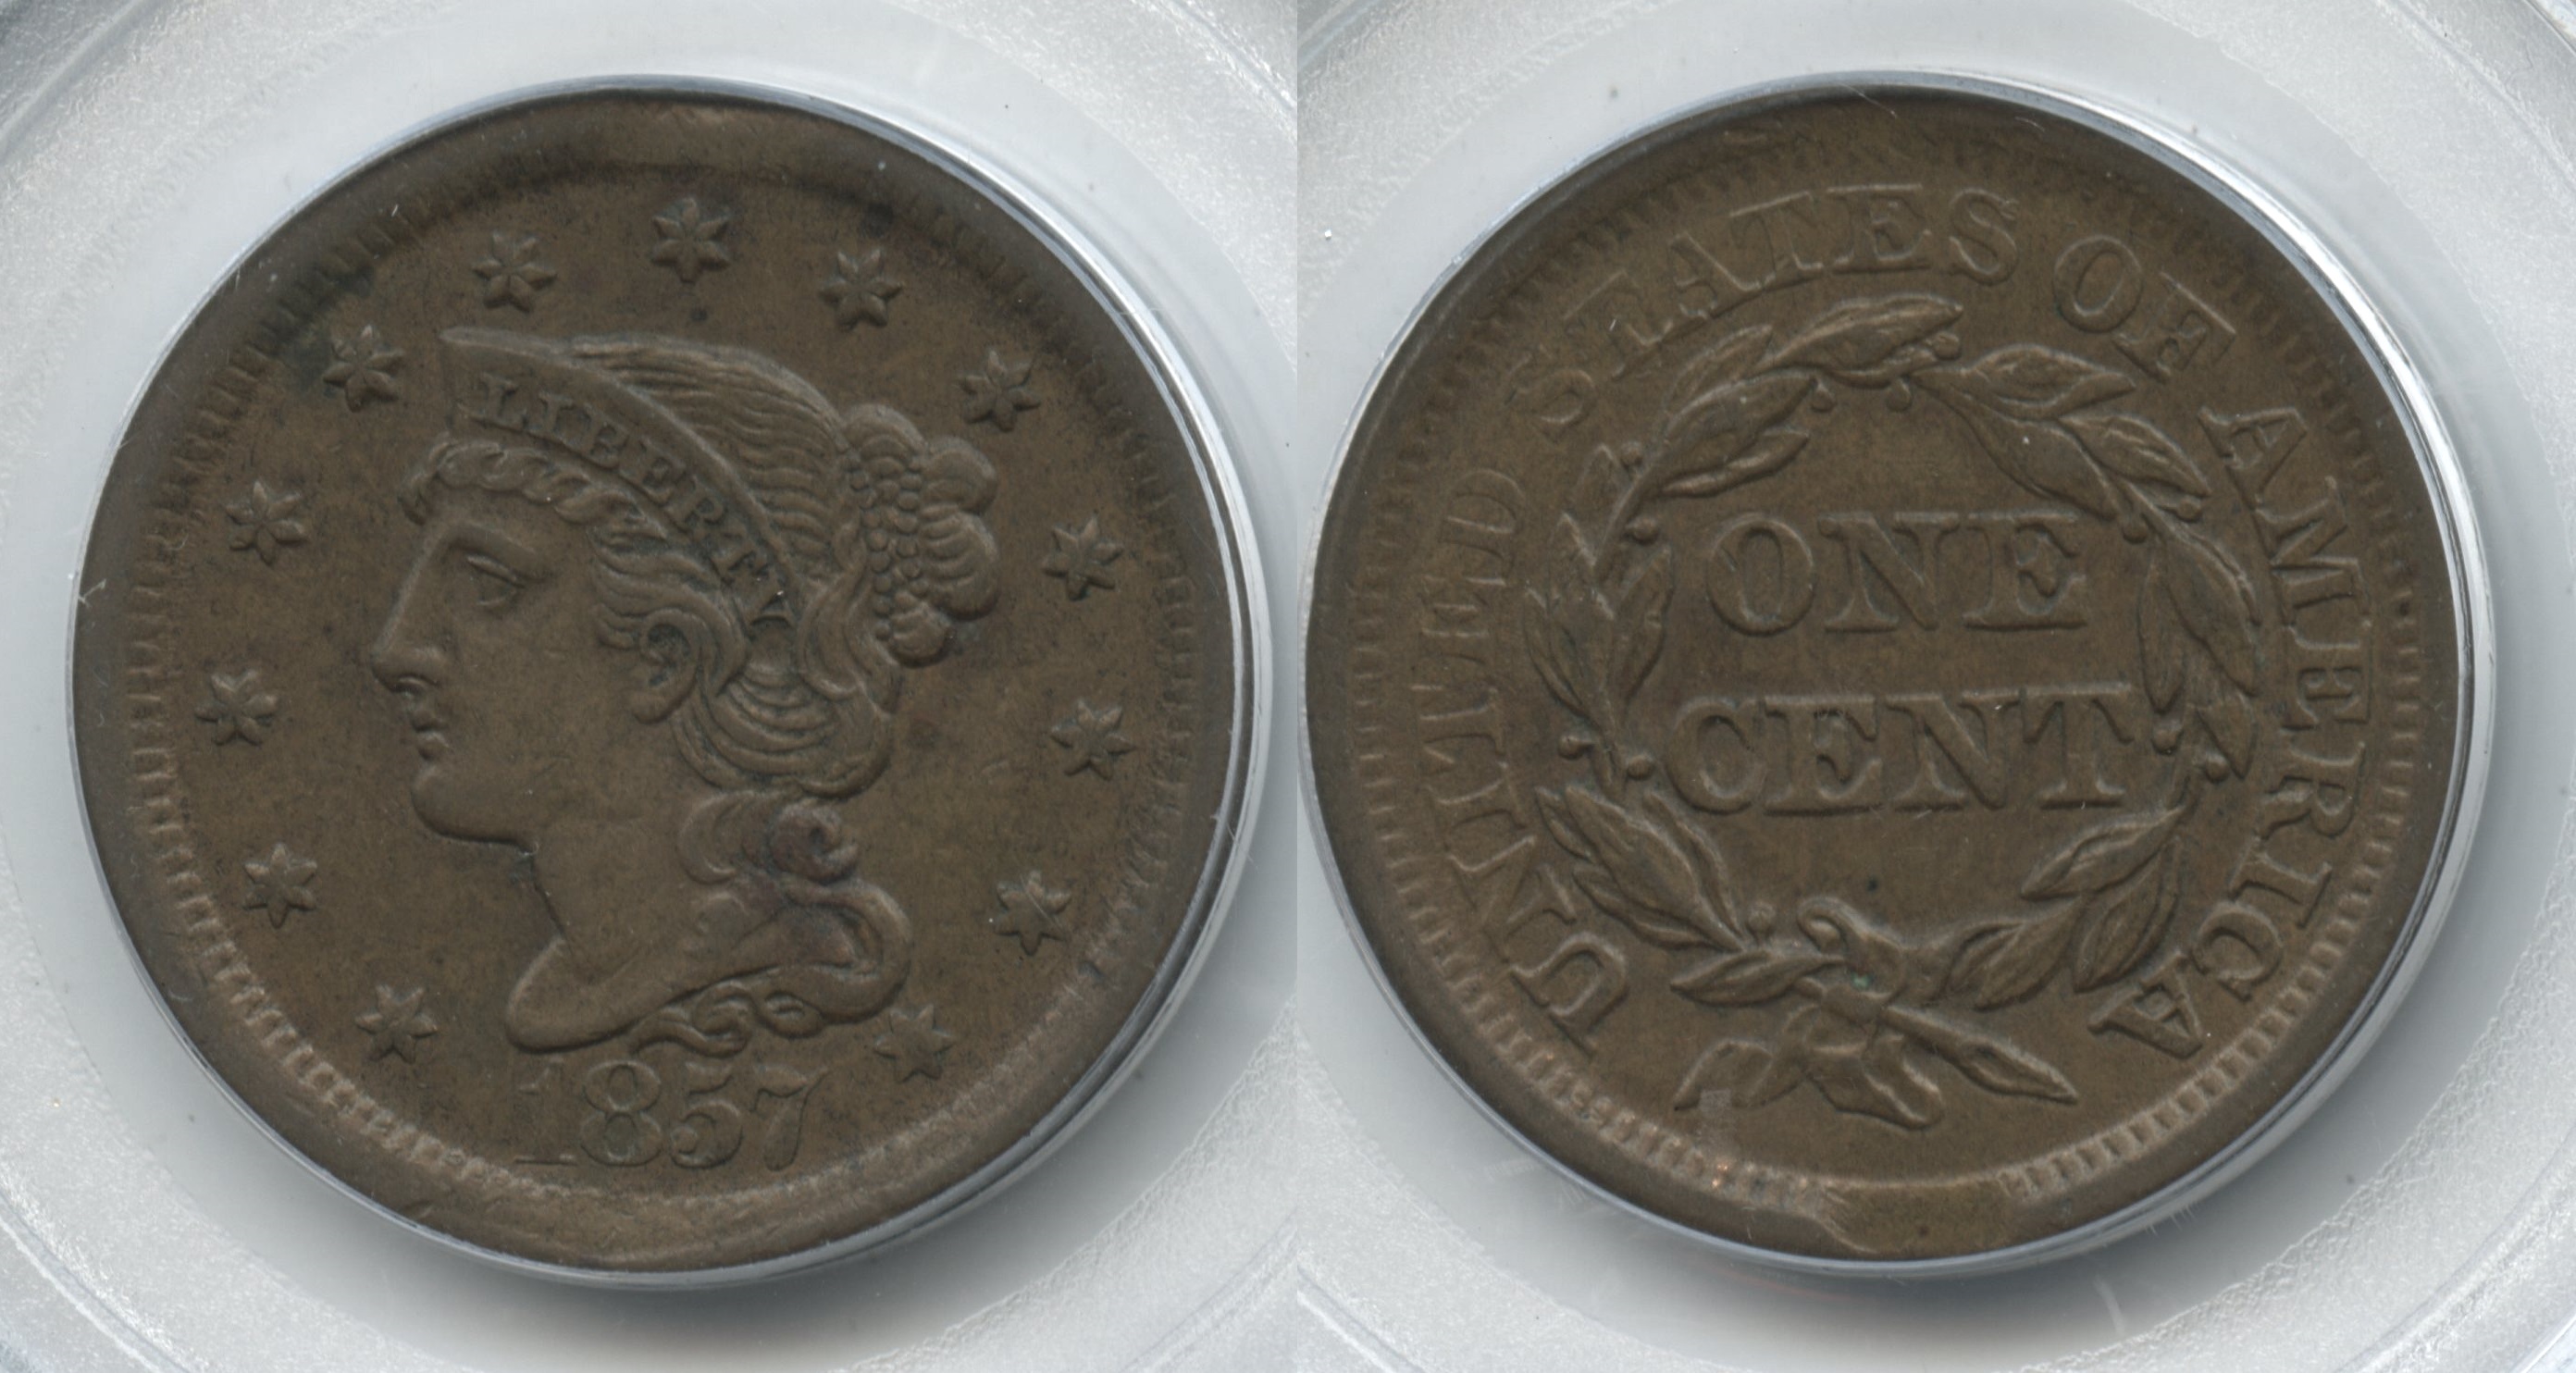 1857 Large Cent PCGS AU-55 Rim Clip